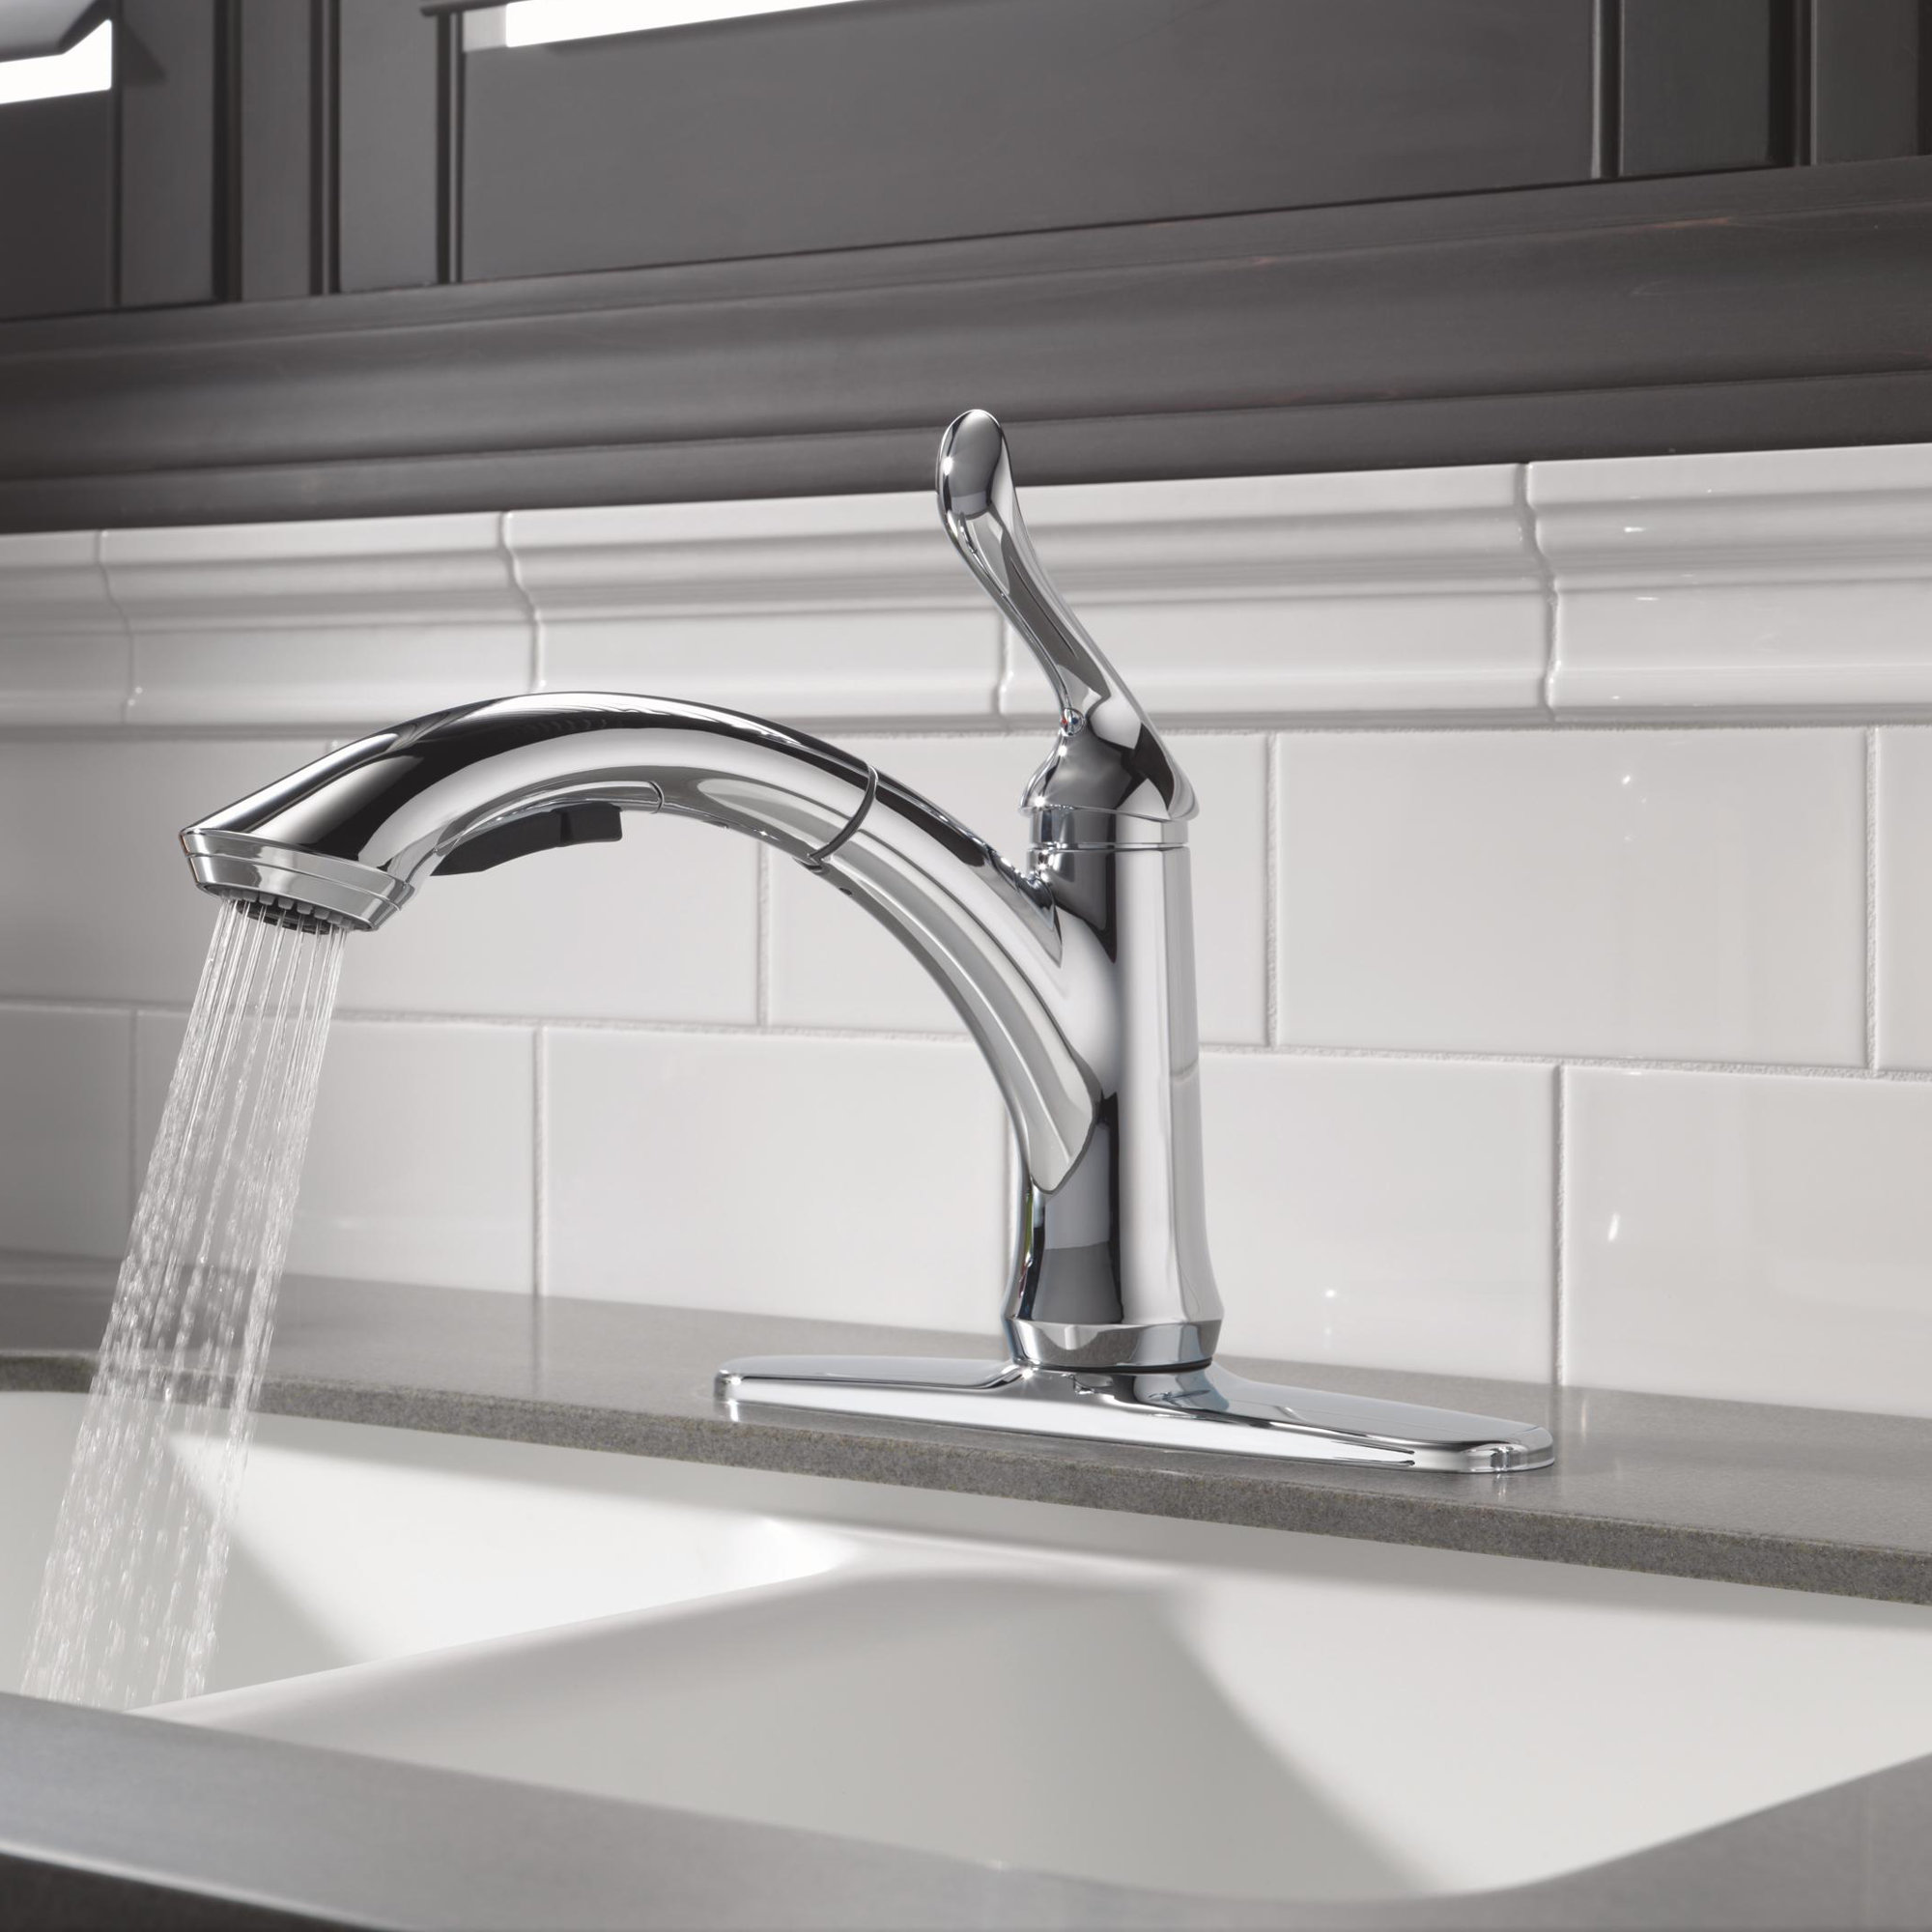 Linden single handle pullout kitchen faucet